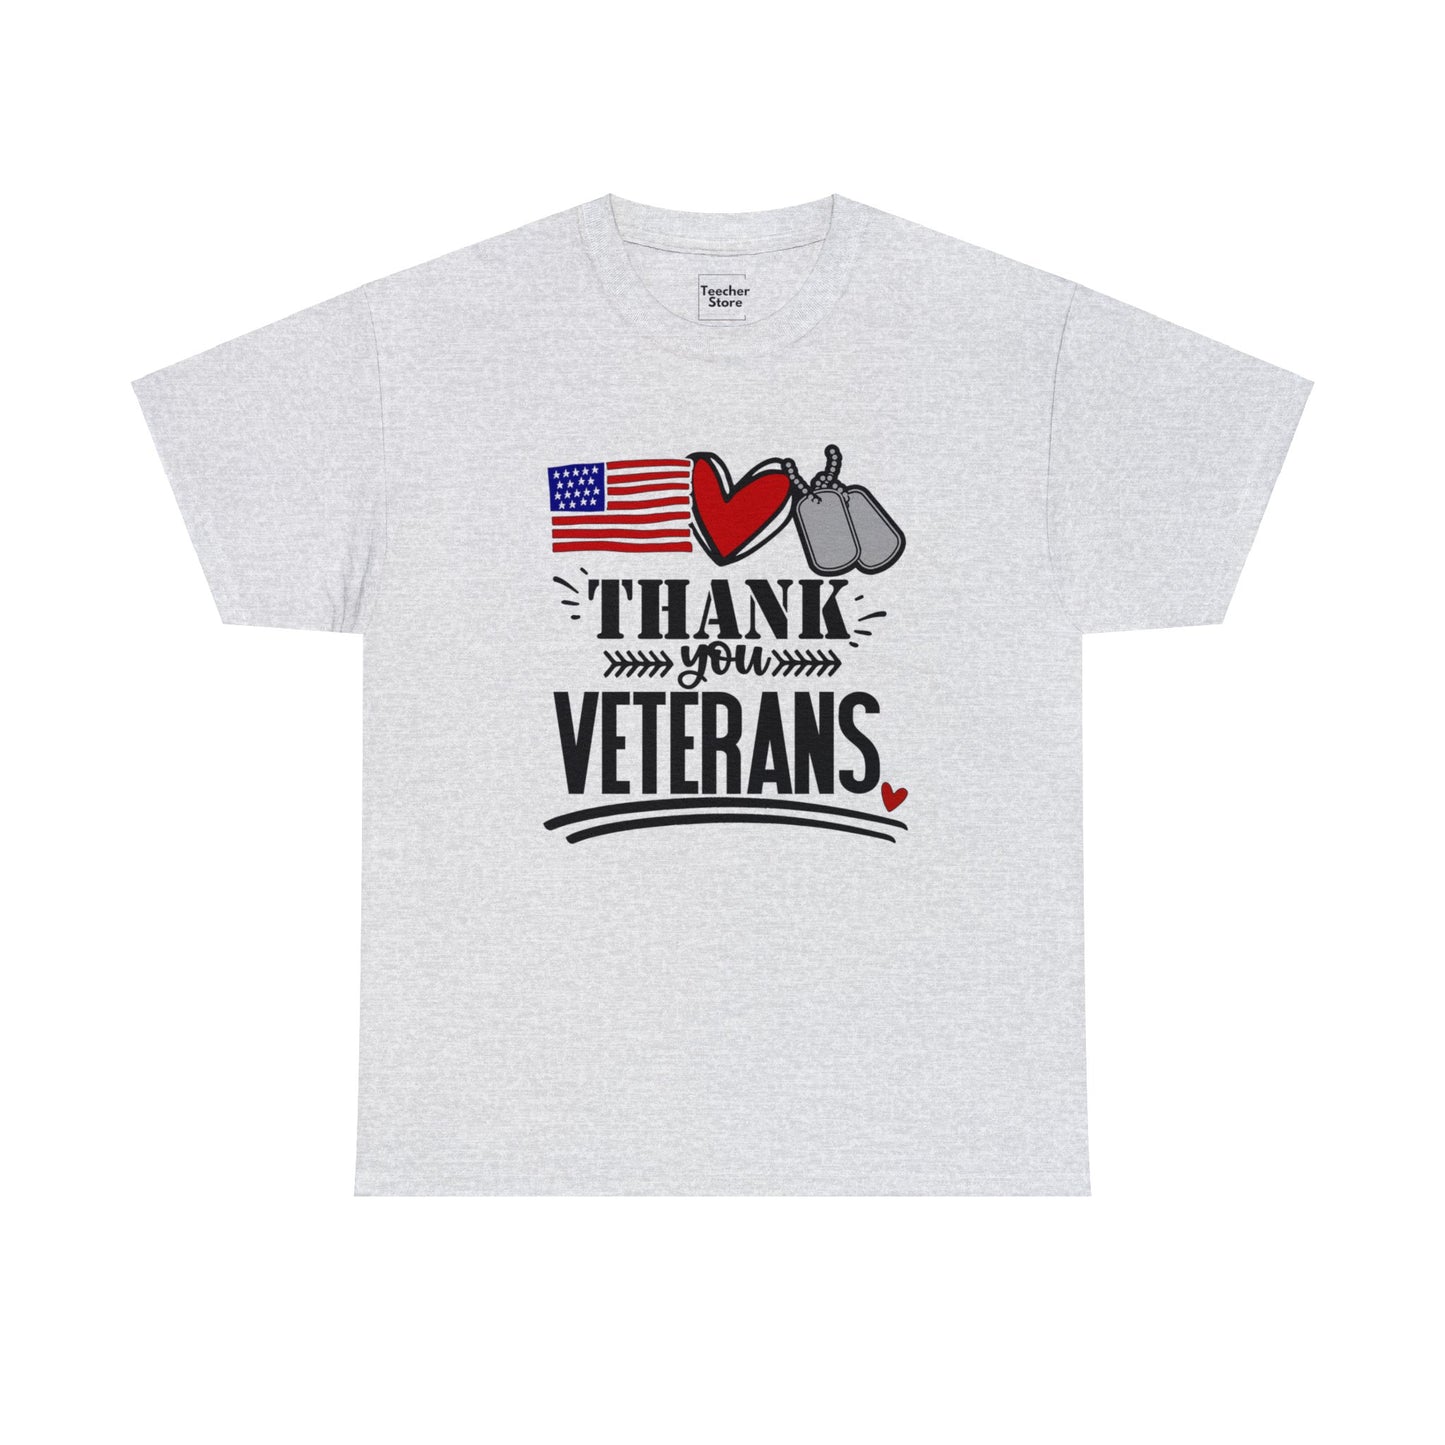 Thank You Veterans Tee-Shirt